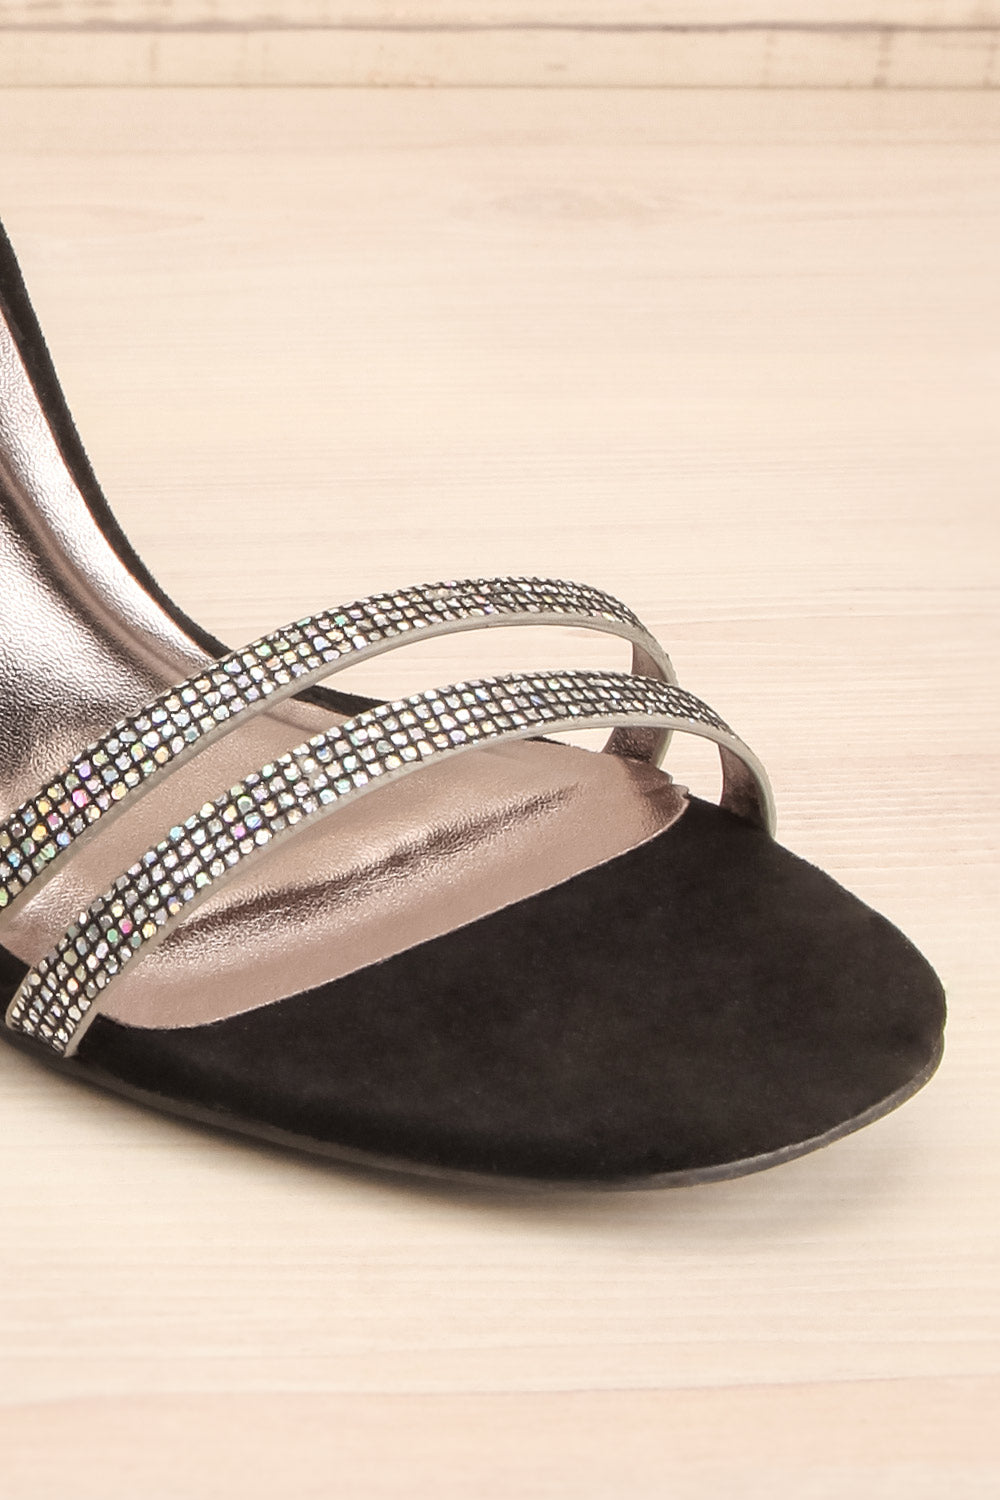 Vulpian Silver Glitter & Black High Heeled Sandals | La Petite Garçonne 4